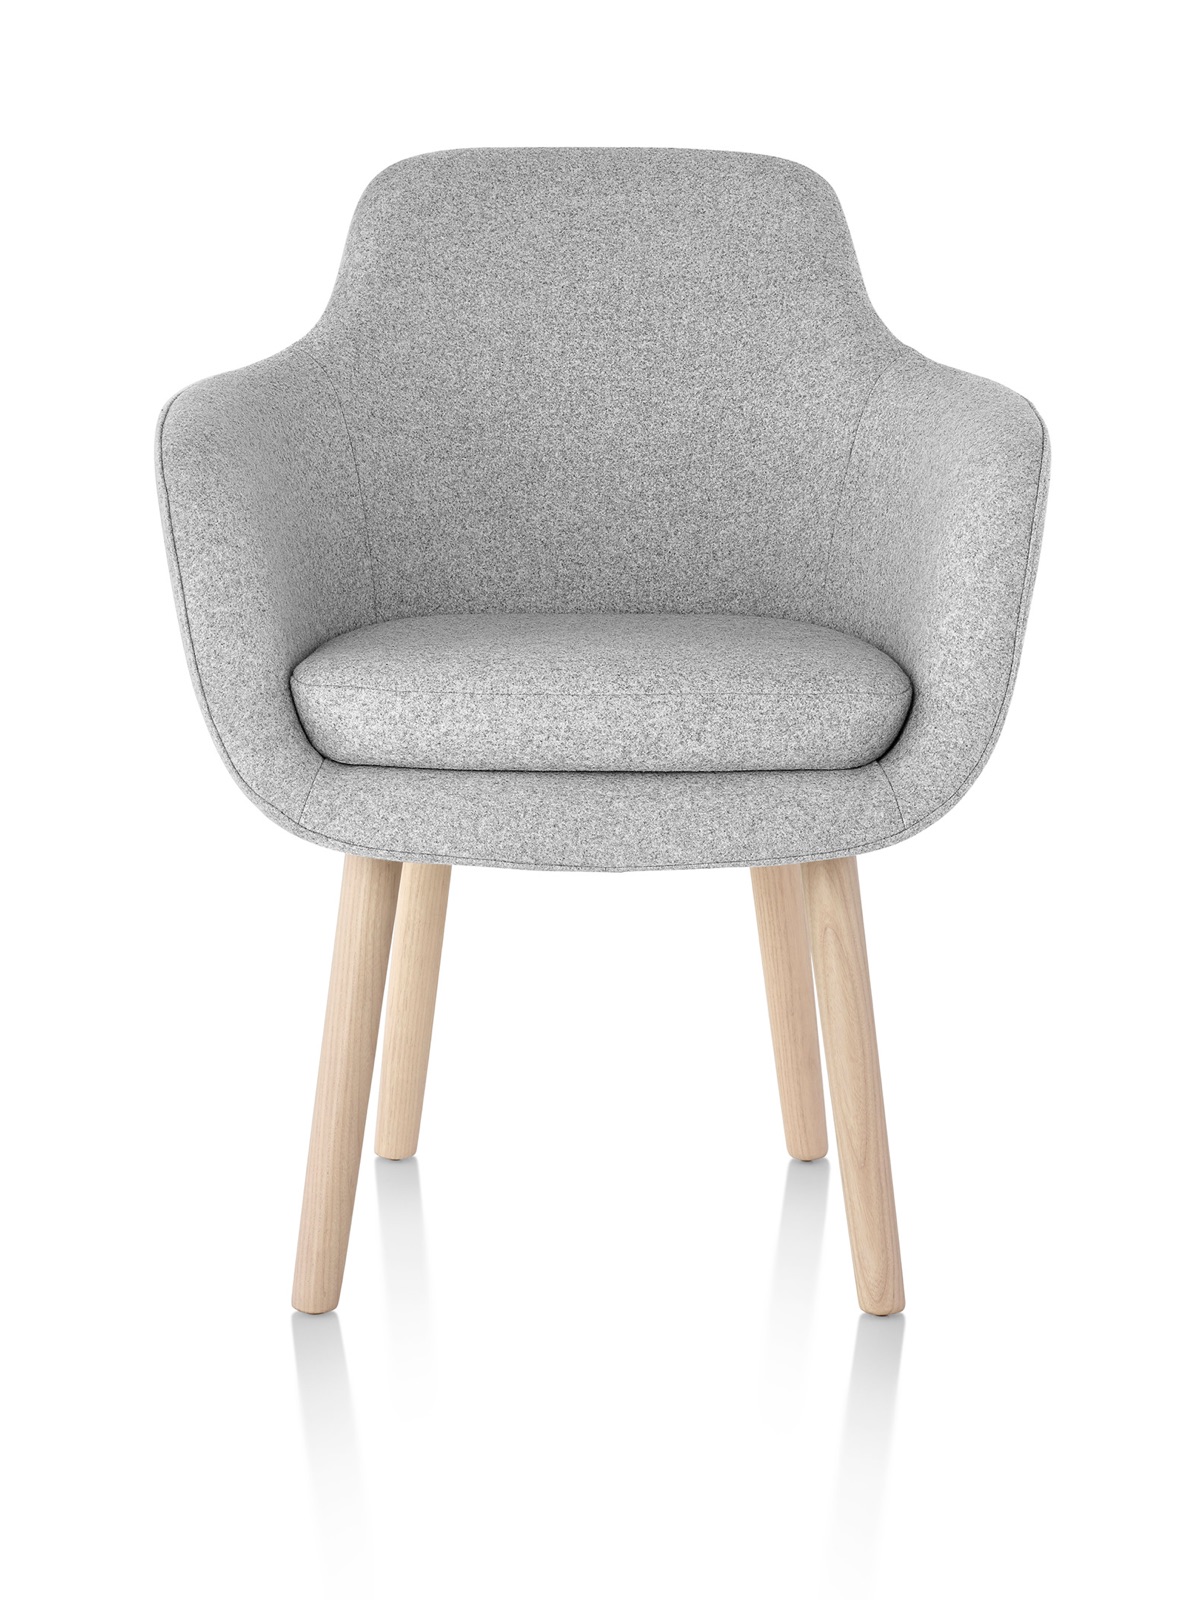 Una silla lateral Saiba gris claro, con un asiento tapizado y patas de madera, vista desde el frente.